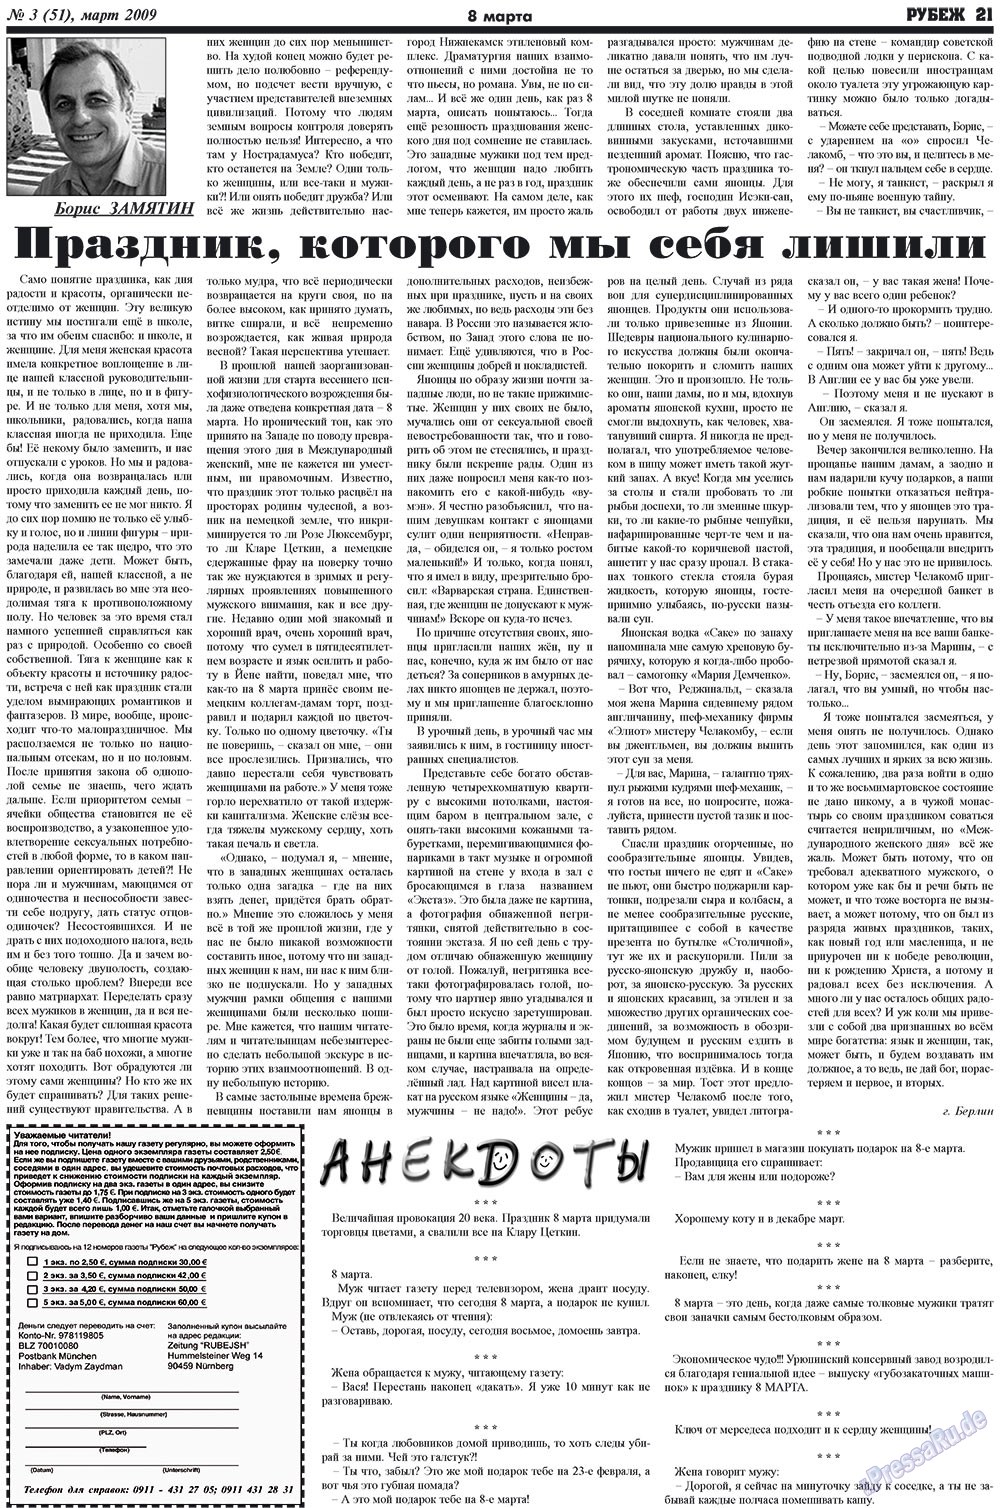 Рубеж (газета). 2009 год, номер 3, стр. 21